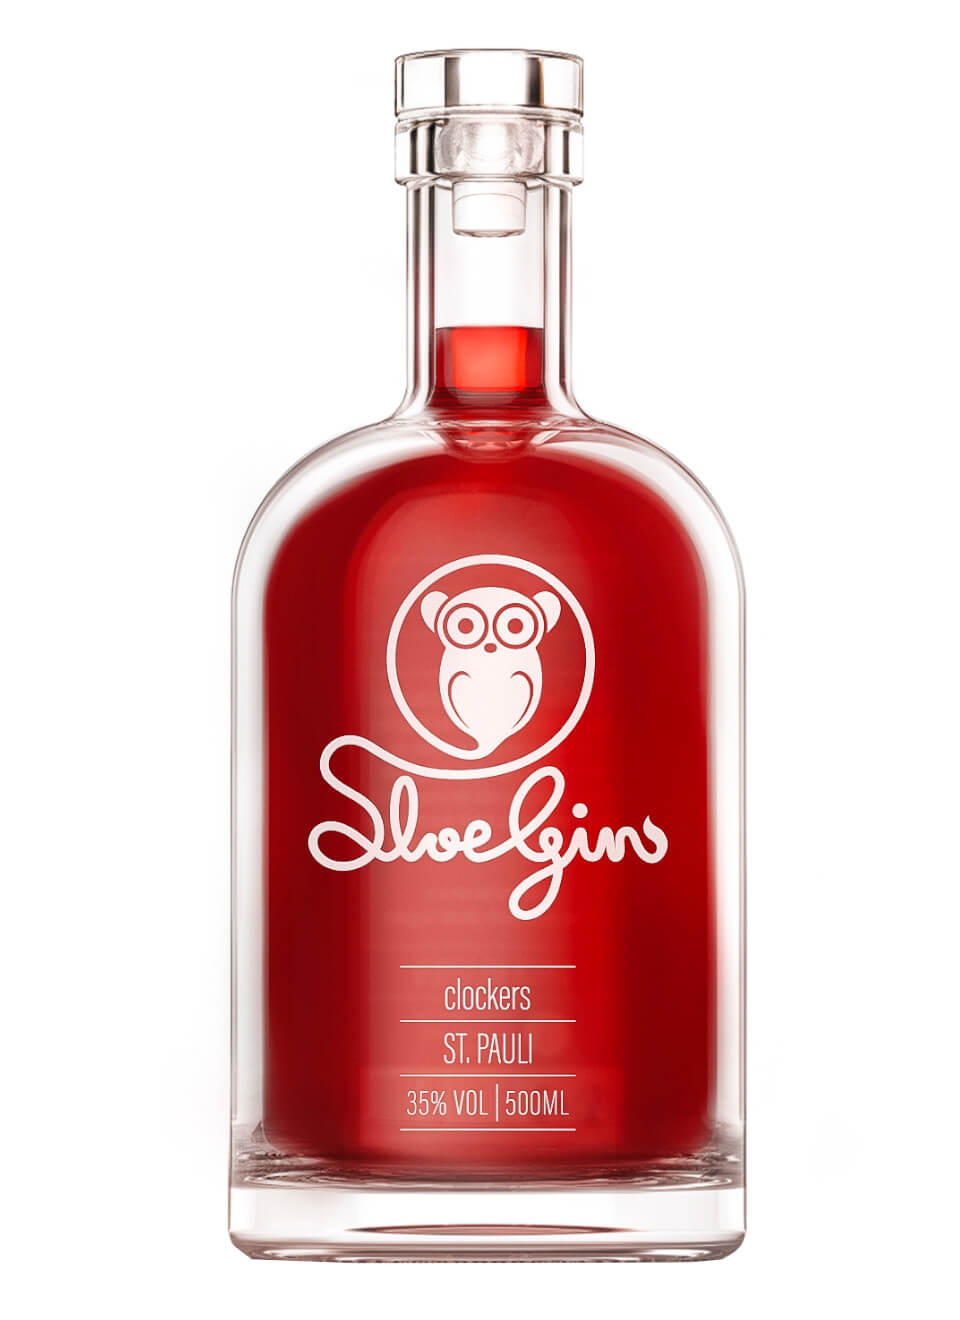 Clockers Sloe Gin 0,5 L günstig kaufen | Spirituosenworld.de - Online Shop  für Spirituosen und Barzubehör